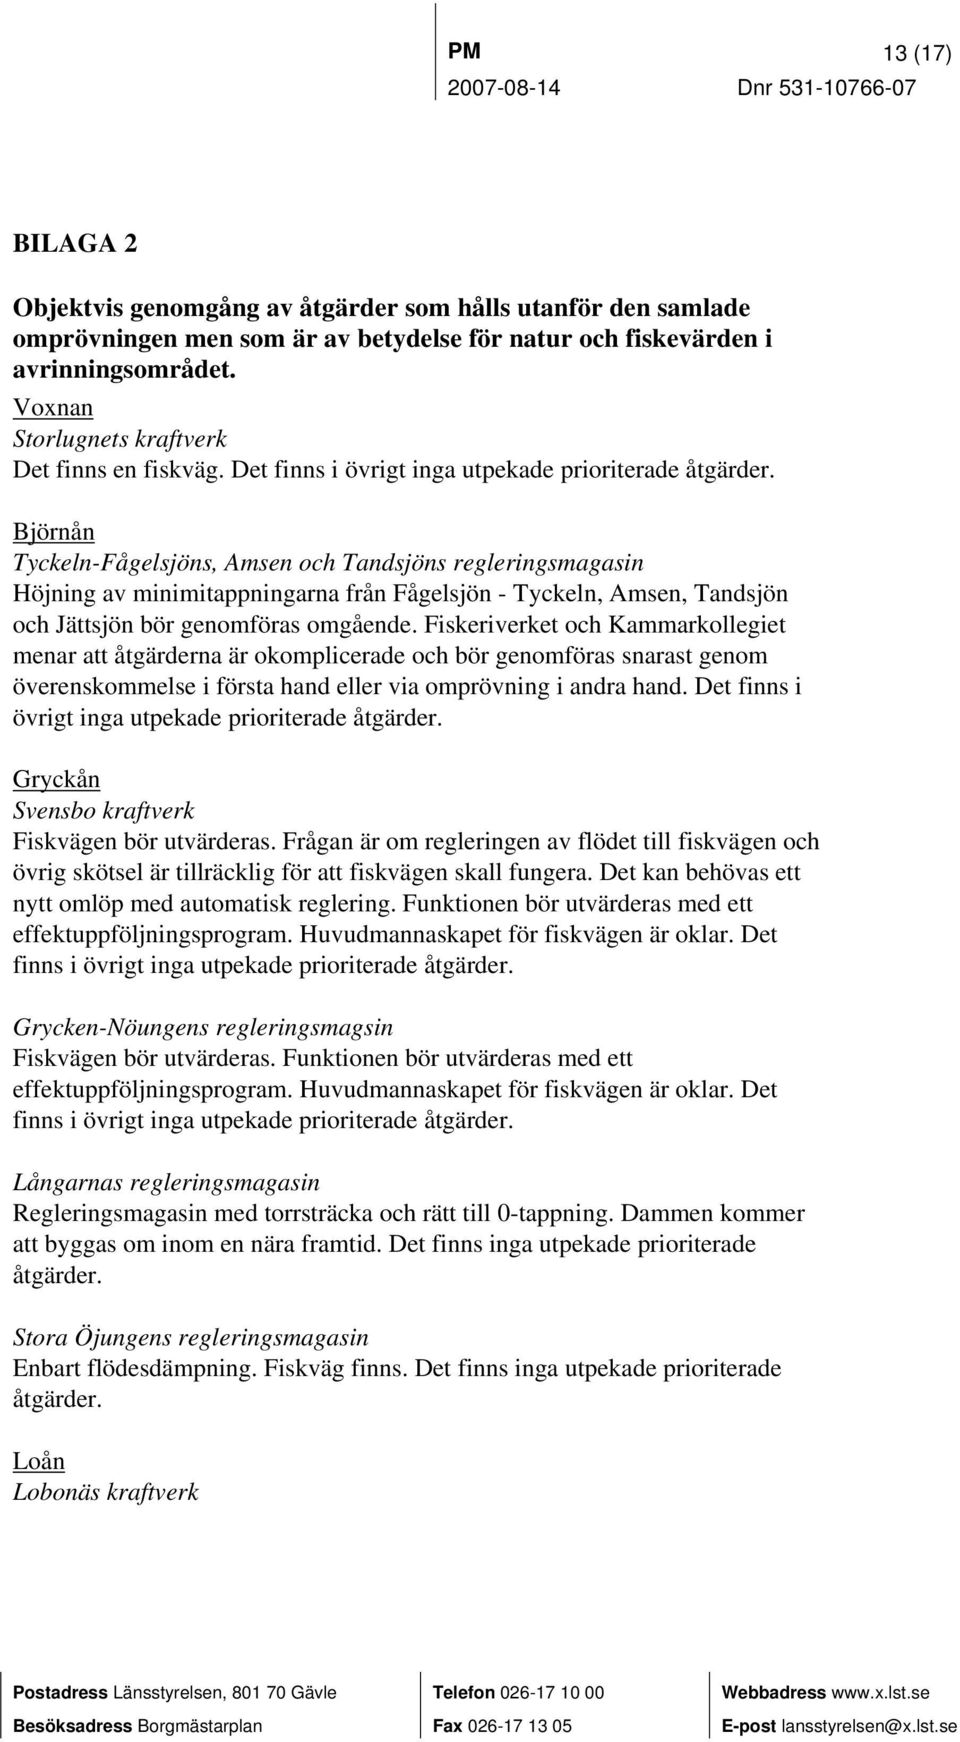 Björnån Tyckeln-Fågelsjöns, Amsen och Tandsjöns regleringsmagasin Höjning av minimitappningarna från Fågelsjön - Tyckeln, Amsen, Tandsjön och Jättsjön bör genomföras omgående.